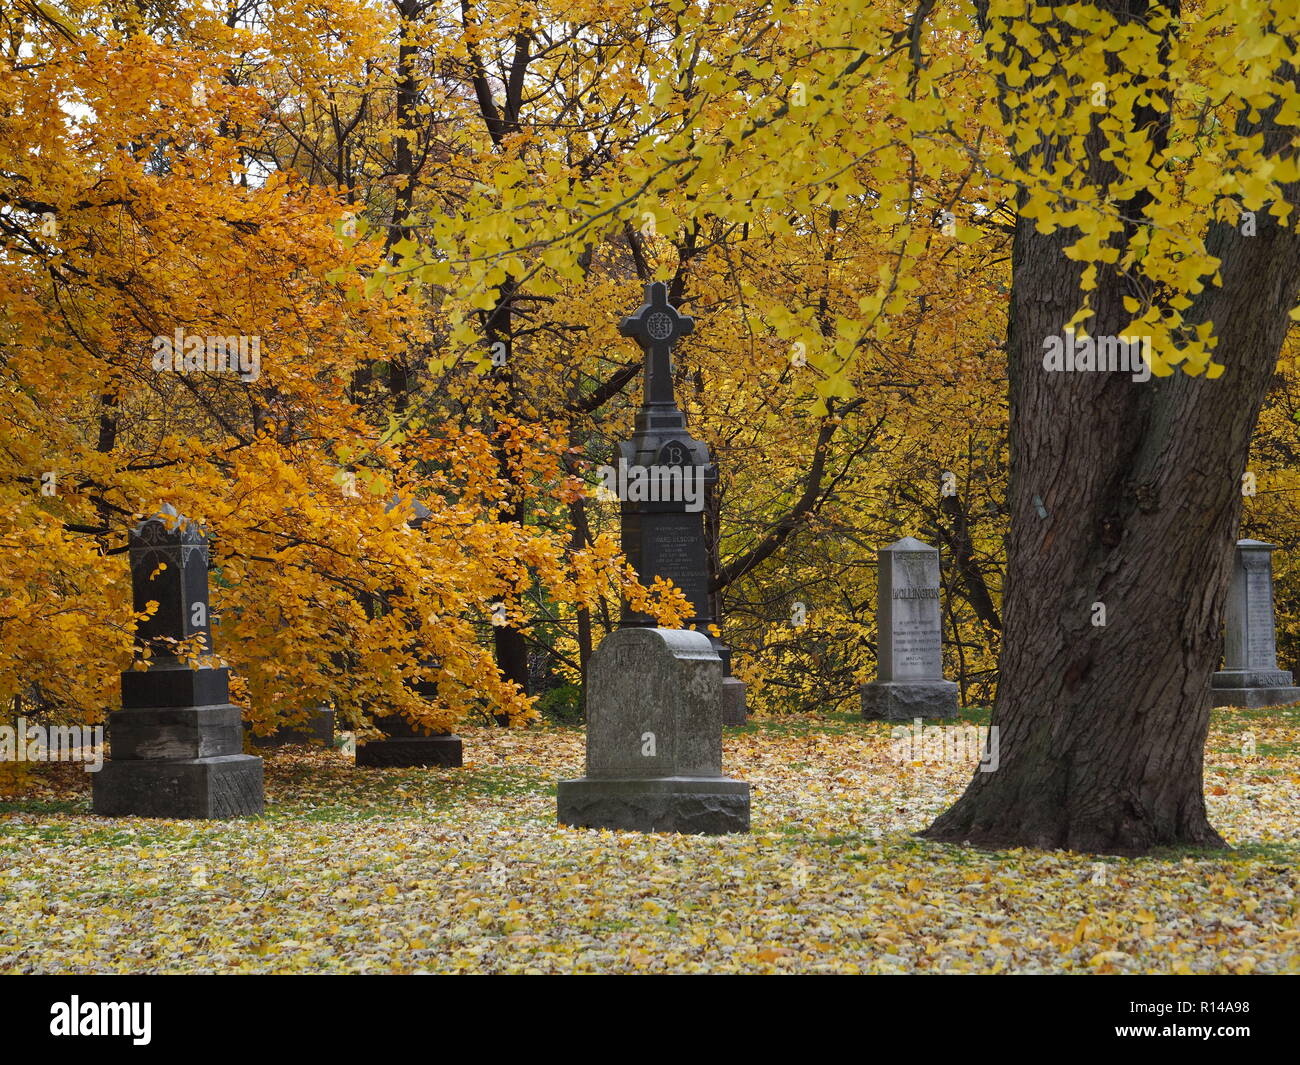 Le cimetière Mount Pleasant est un ancien cimetière dans un cadre semblable à un parc avec des arbres matures que prises sur couleurs spectaculaires à l'automne. Banque D'Images